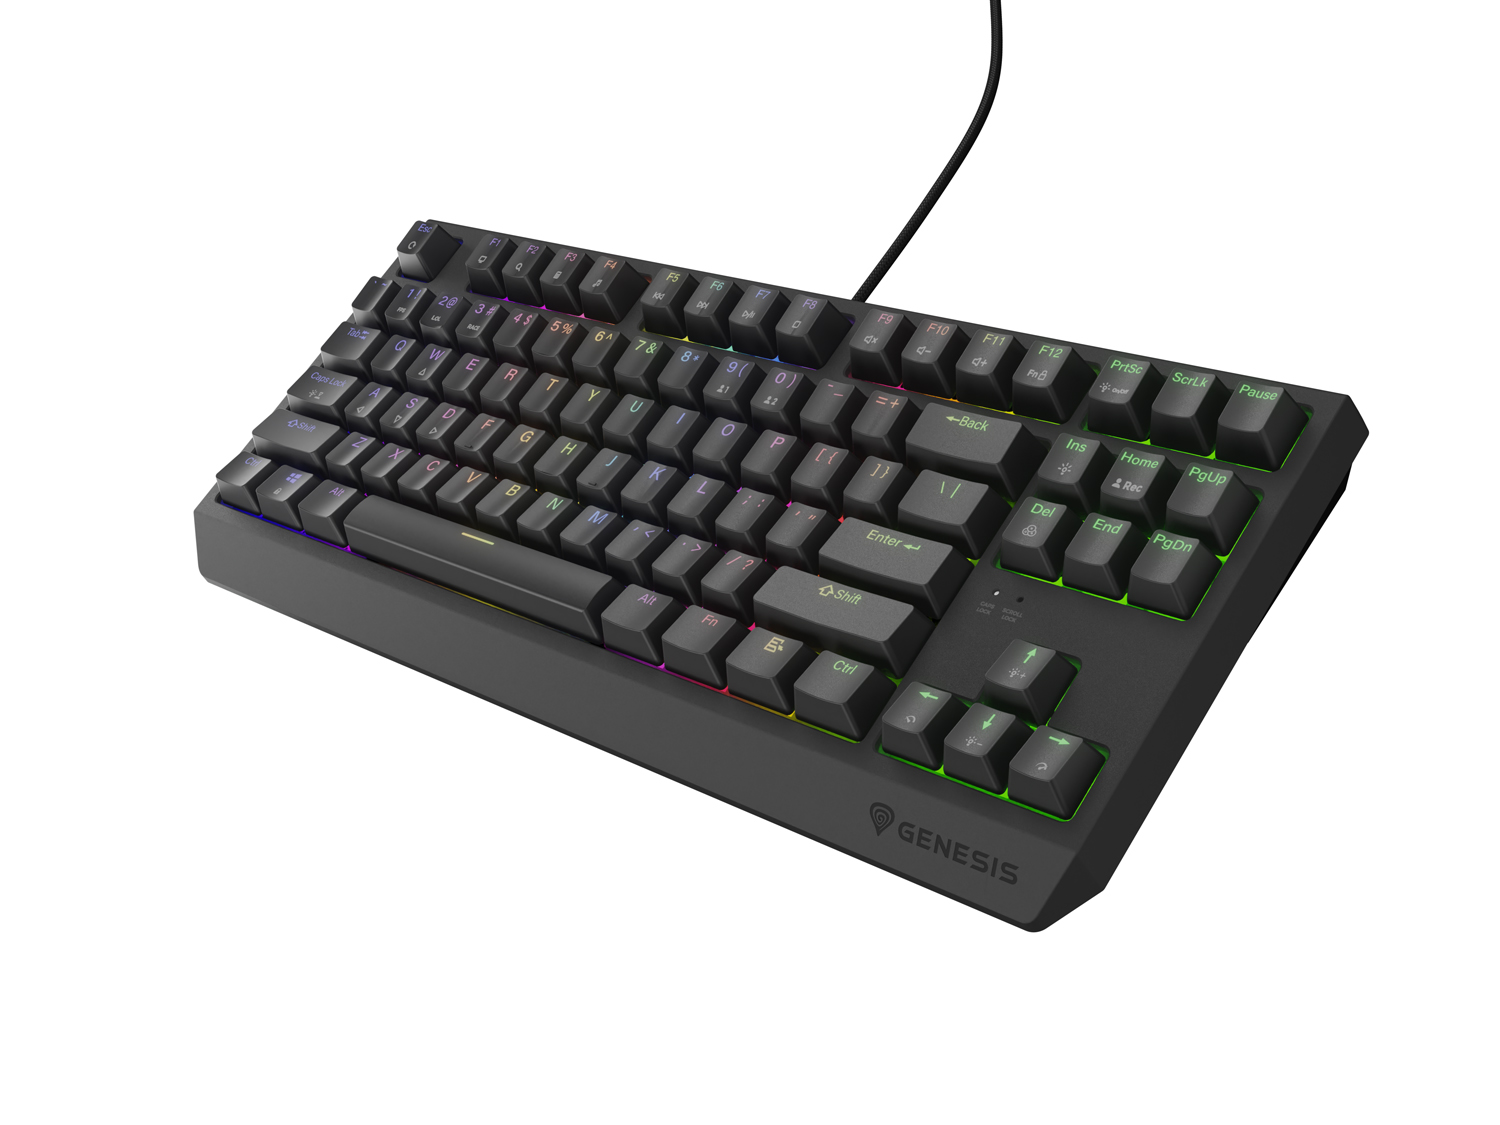 Obrázek Genesis herní klávesnice THOR 230/TKL/RGB/Outemu Red/Drátová USB/US layout/Černá